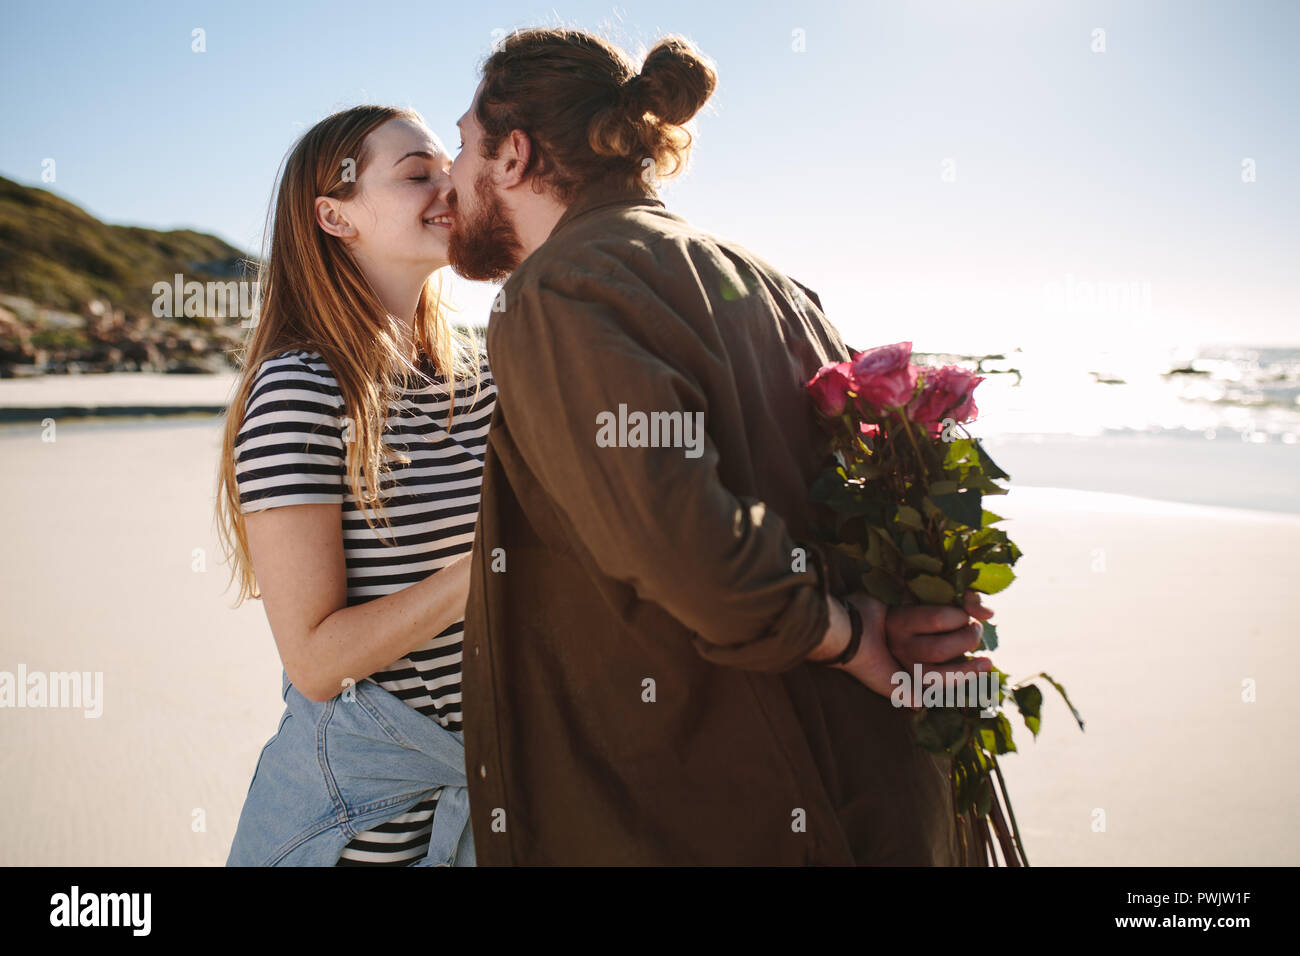 Fidanzato holding sorpresa bouquet di fiori per la ragazza sulla spiaggia. Coppia romantica su un romantico data in spiaggia. Foto Stock